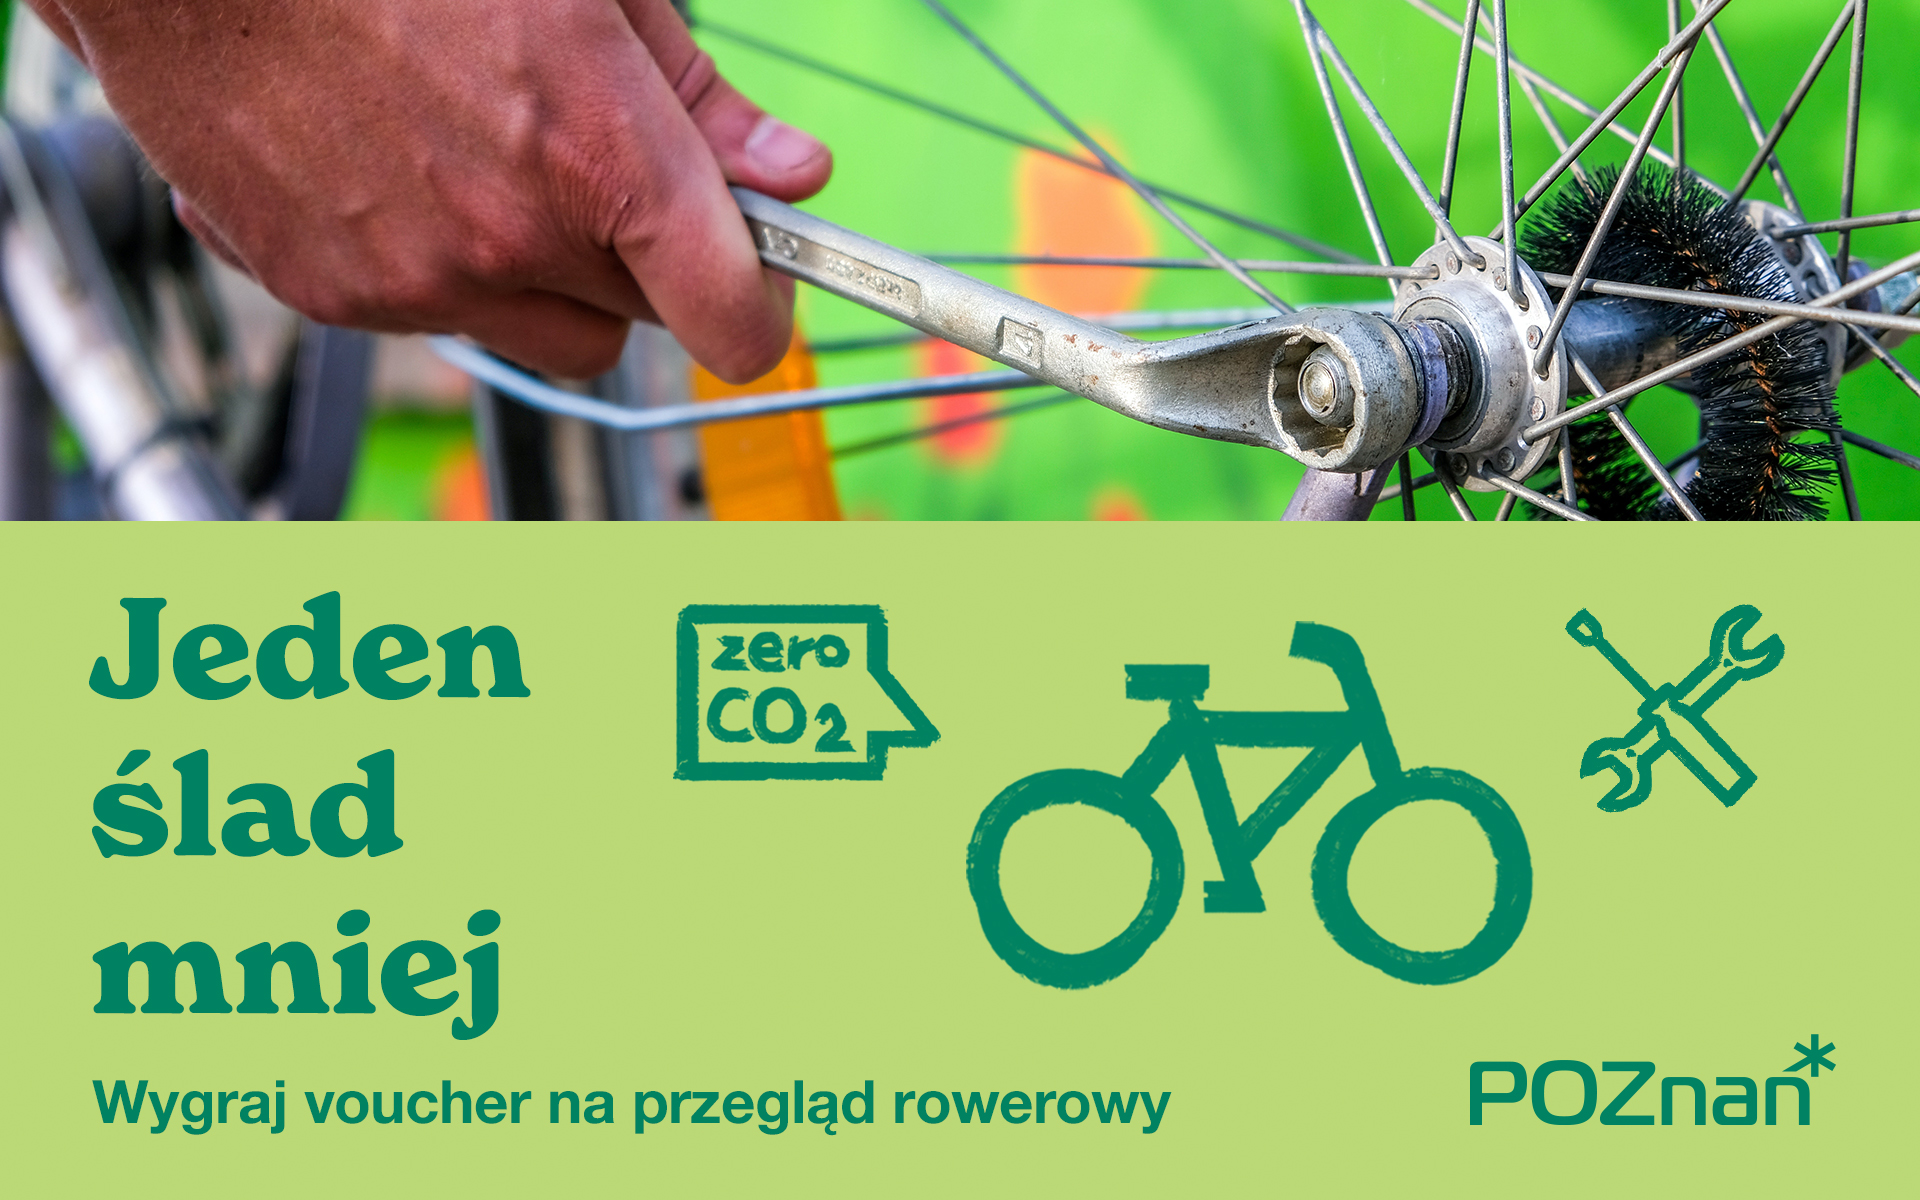 Ręka mechanika naprawiająca koło od roweru. Poniżej grafika zeroemisyjnego roweru oraz informacja o możliwości wygrania voucheru w konkursie. - grafika artykułu